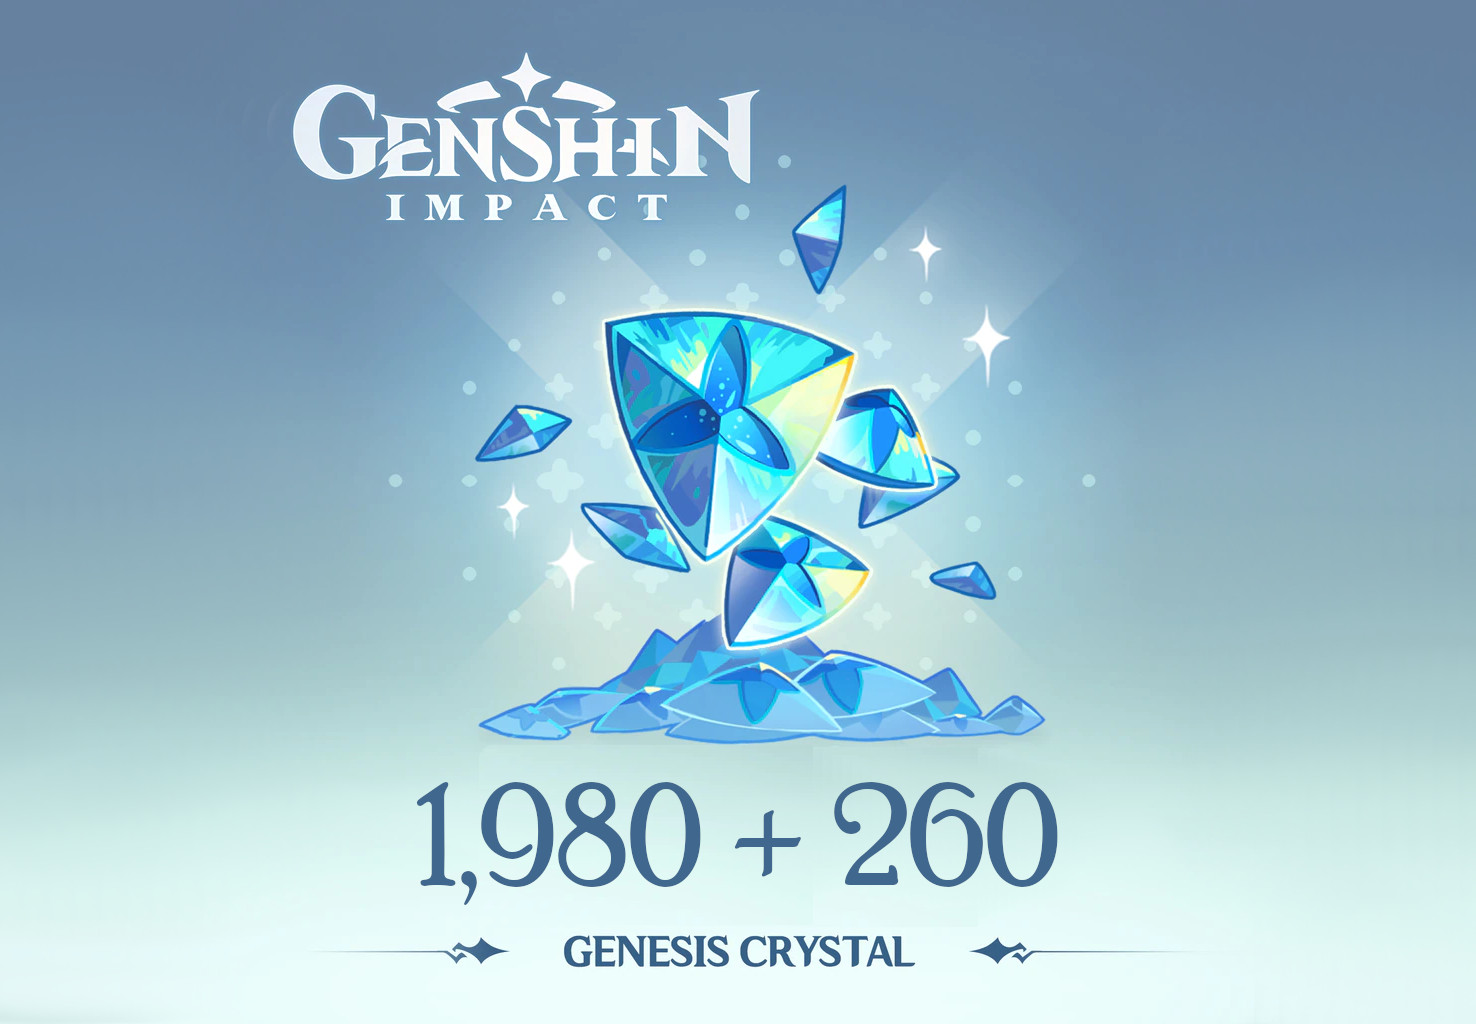 Genshin Impact - 1,980 + 260 Genesis Crystals Reidos Voucher 33.9$